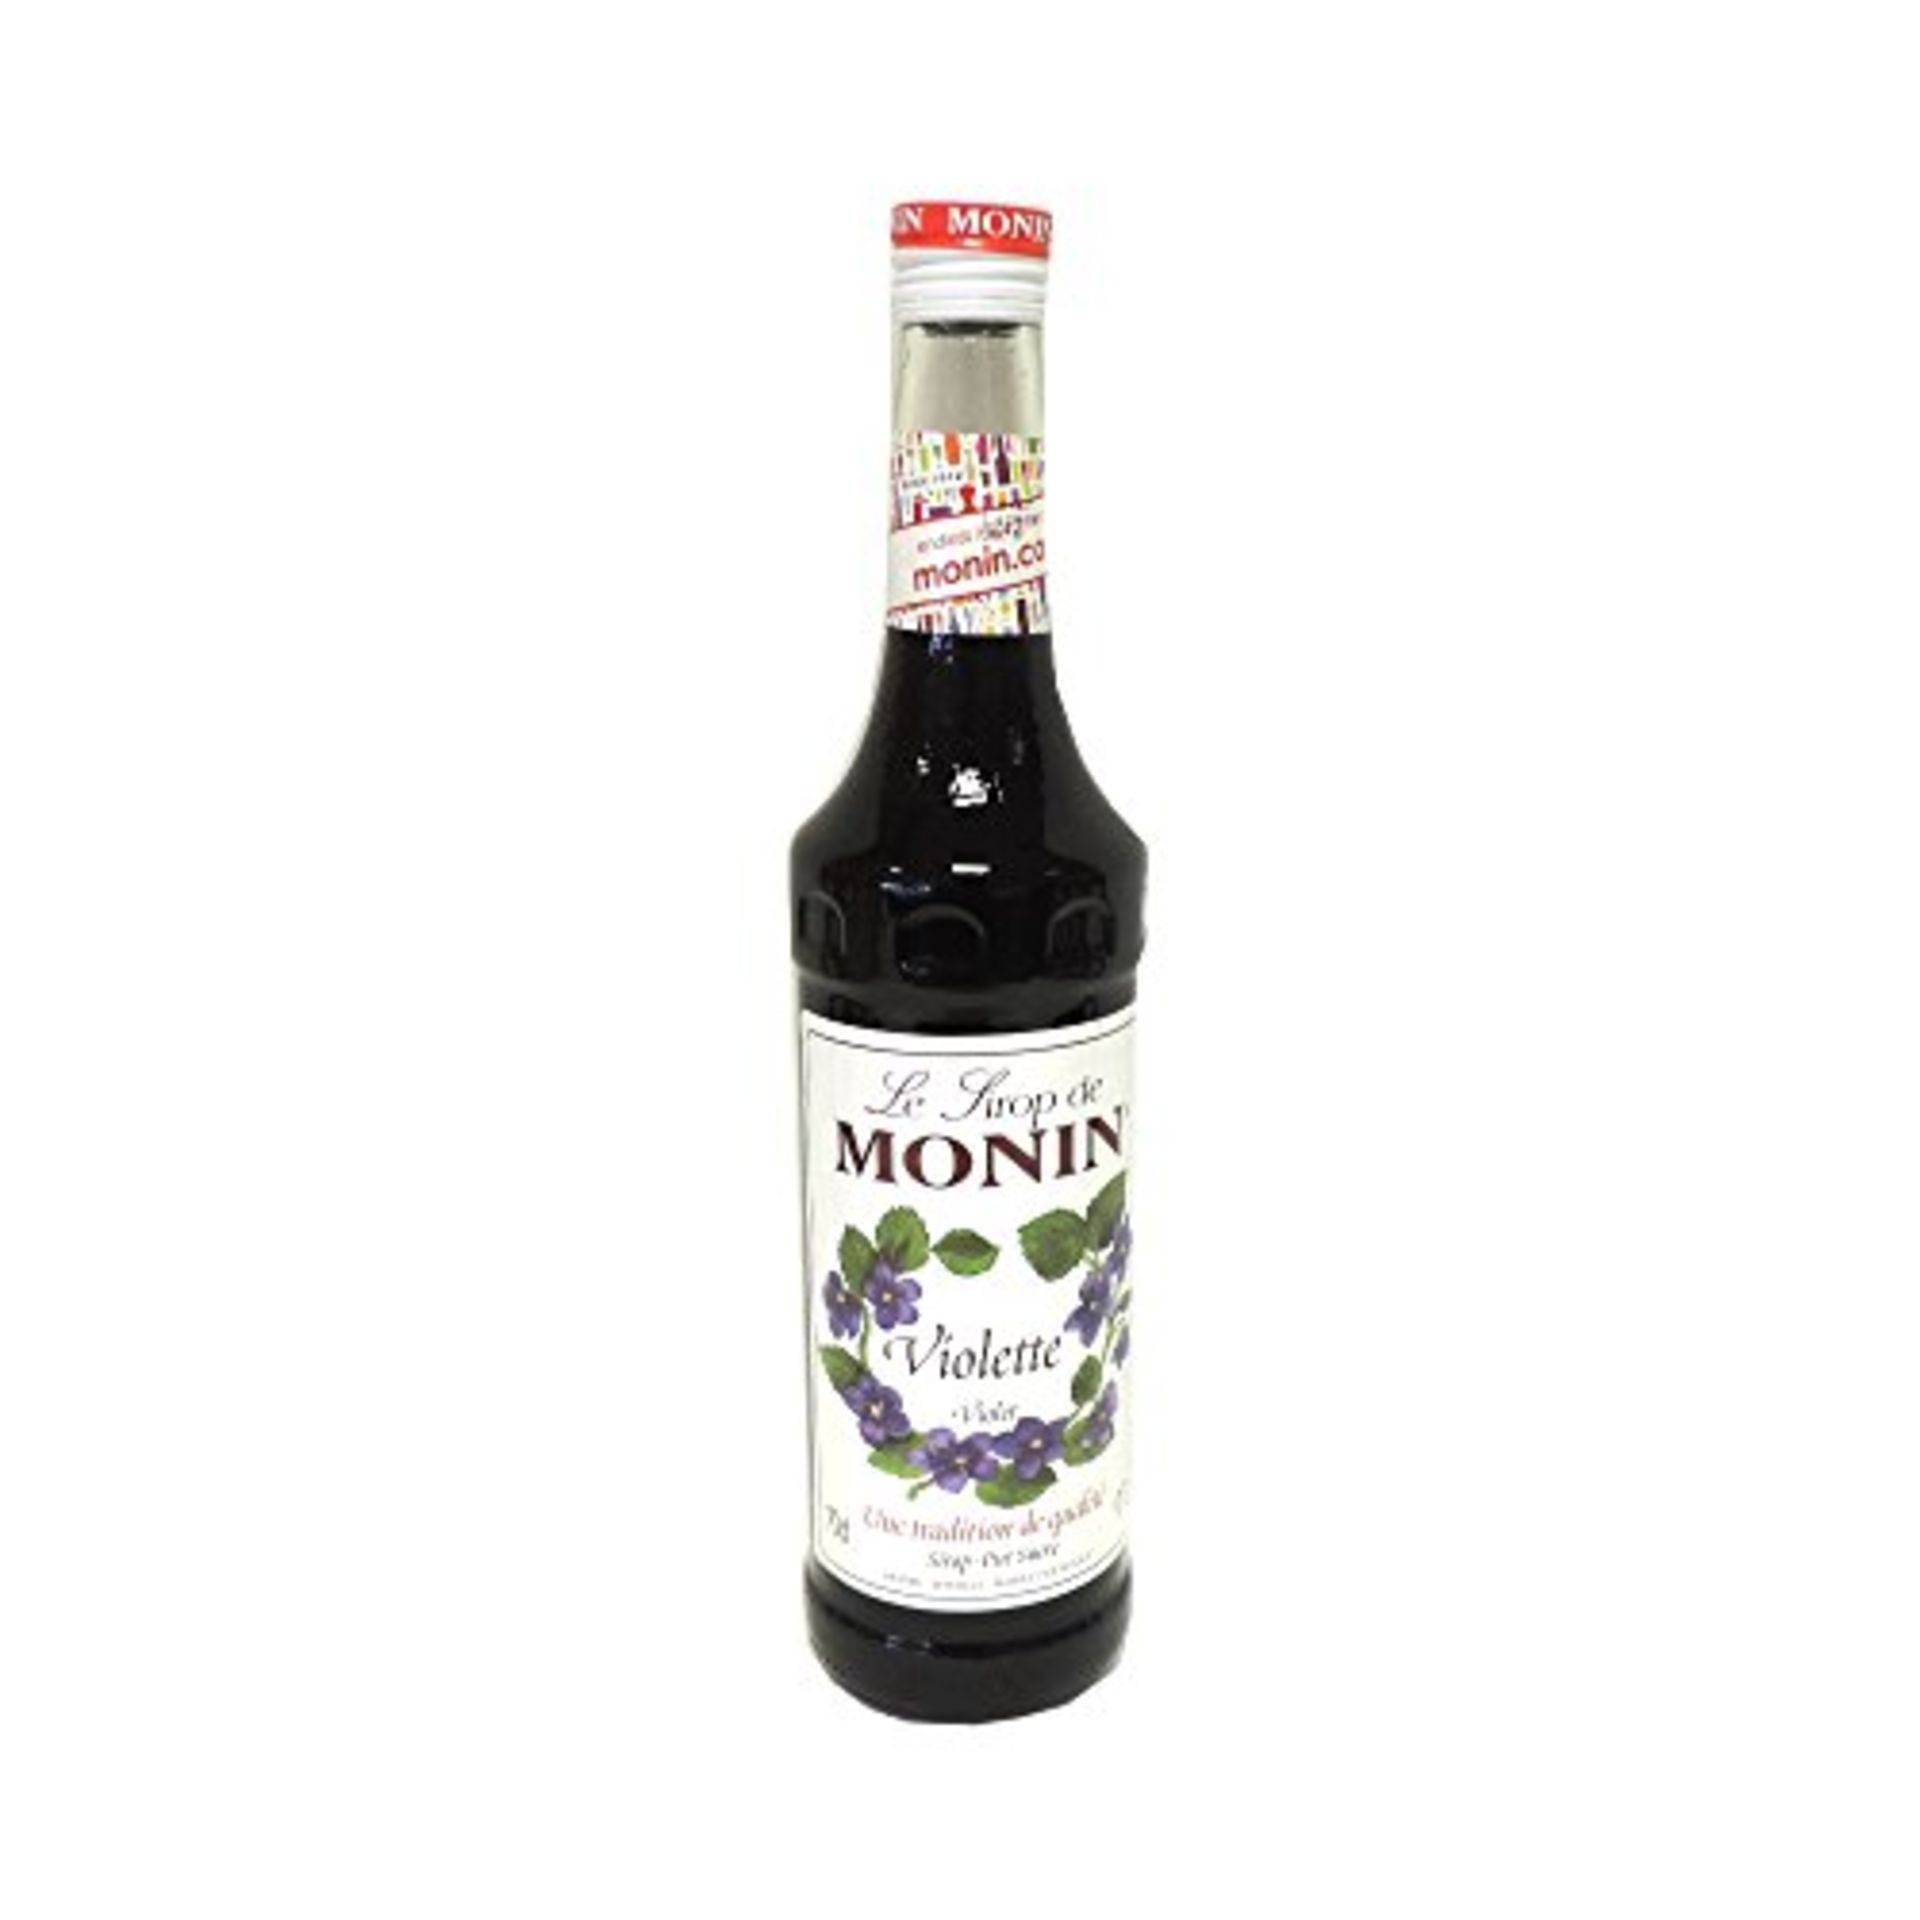 *RRP £390 Monin Violet Bbe-1.24 & More.